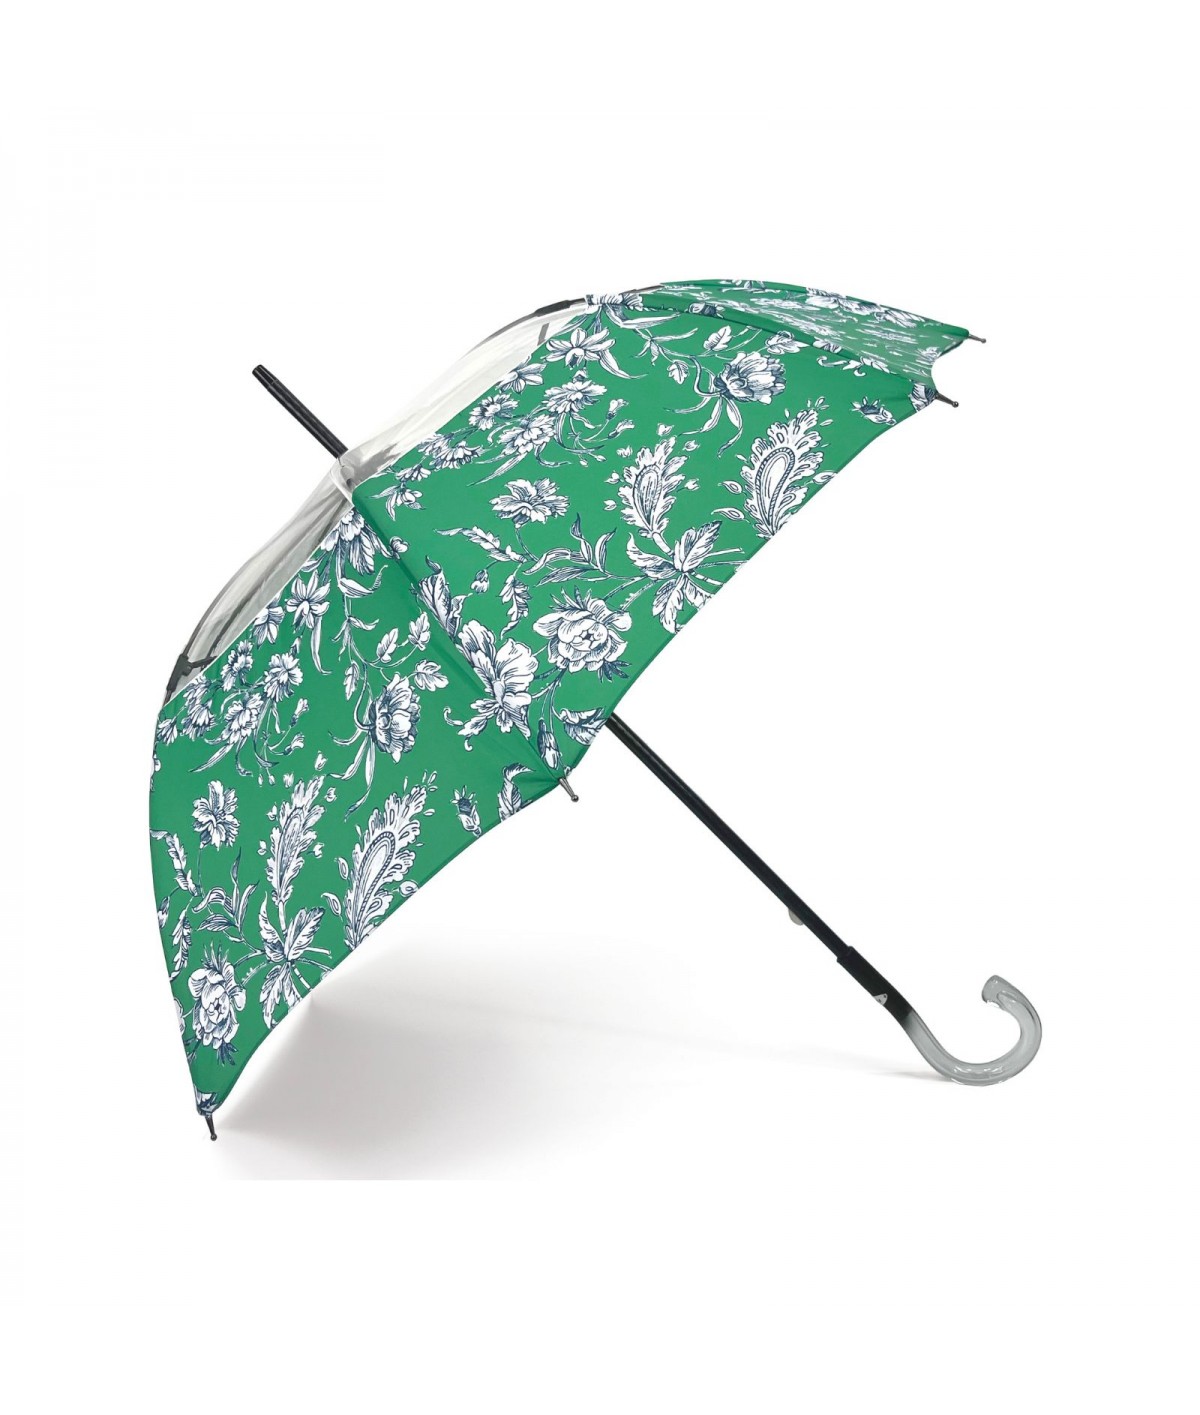 →  Parapluie " Imprimé et Transparent" - Vert - Fleur - Parapluie Made in France par Maison Pierre Vaux